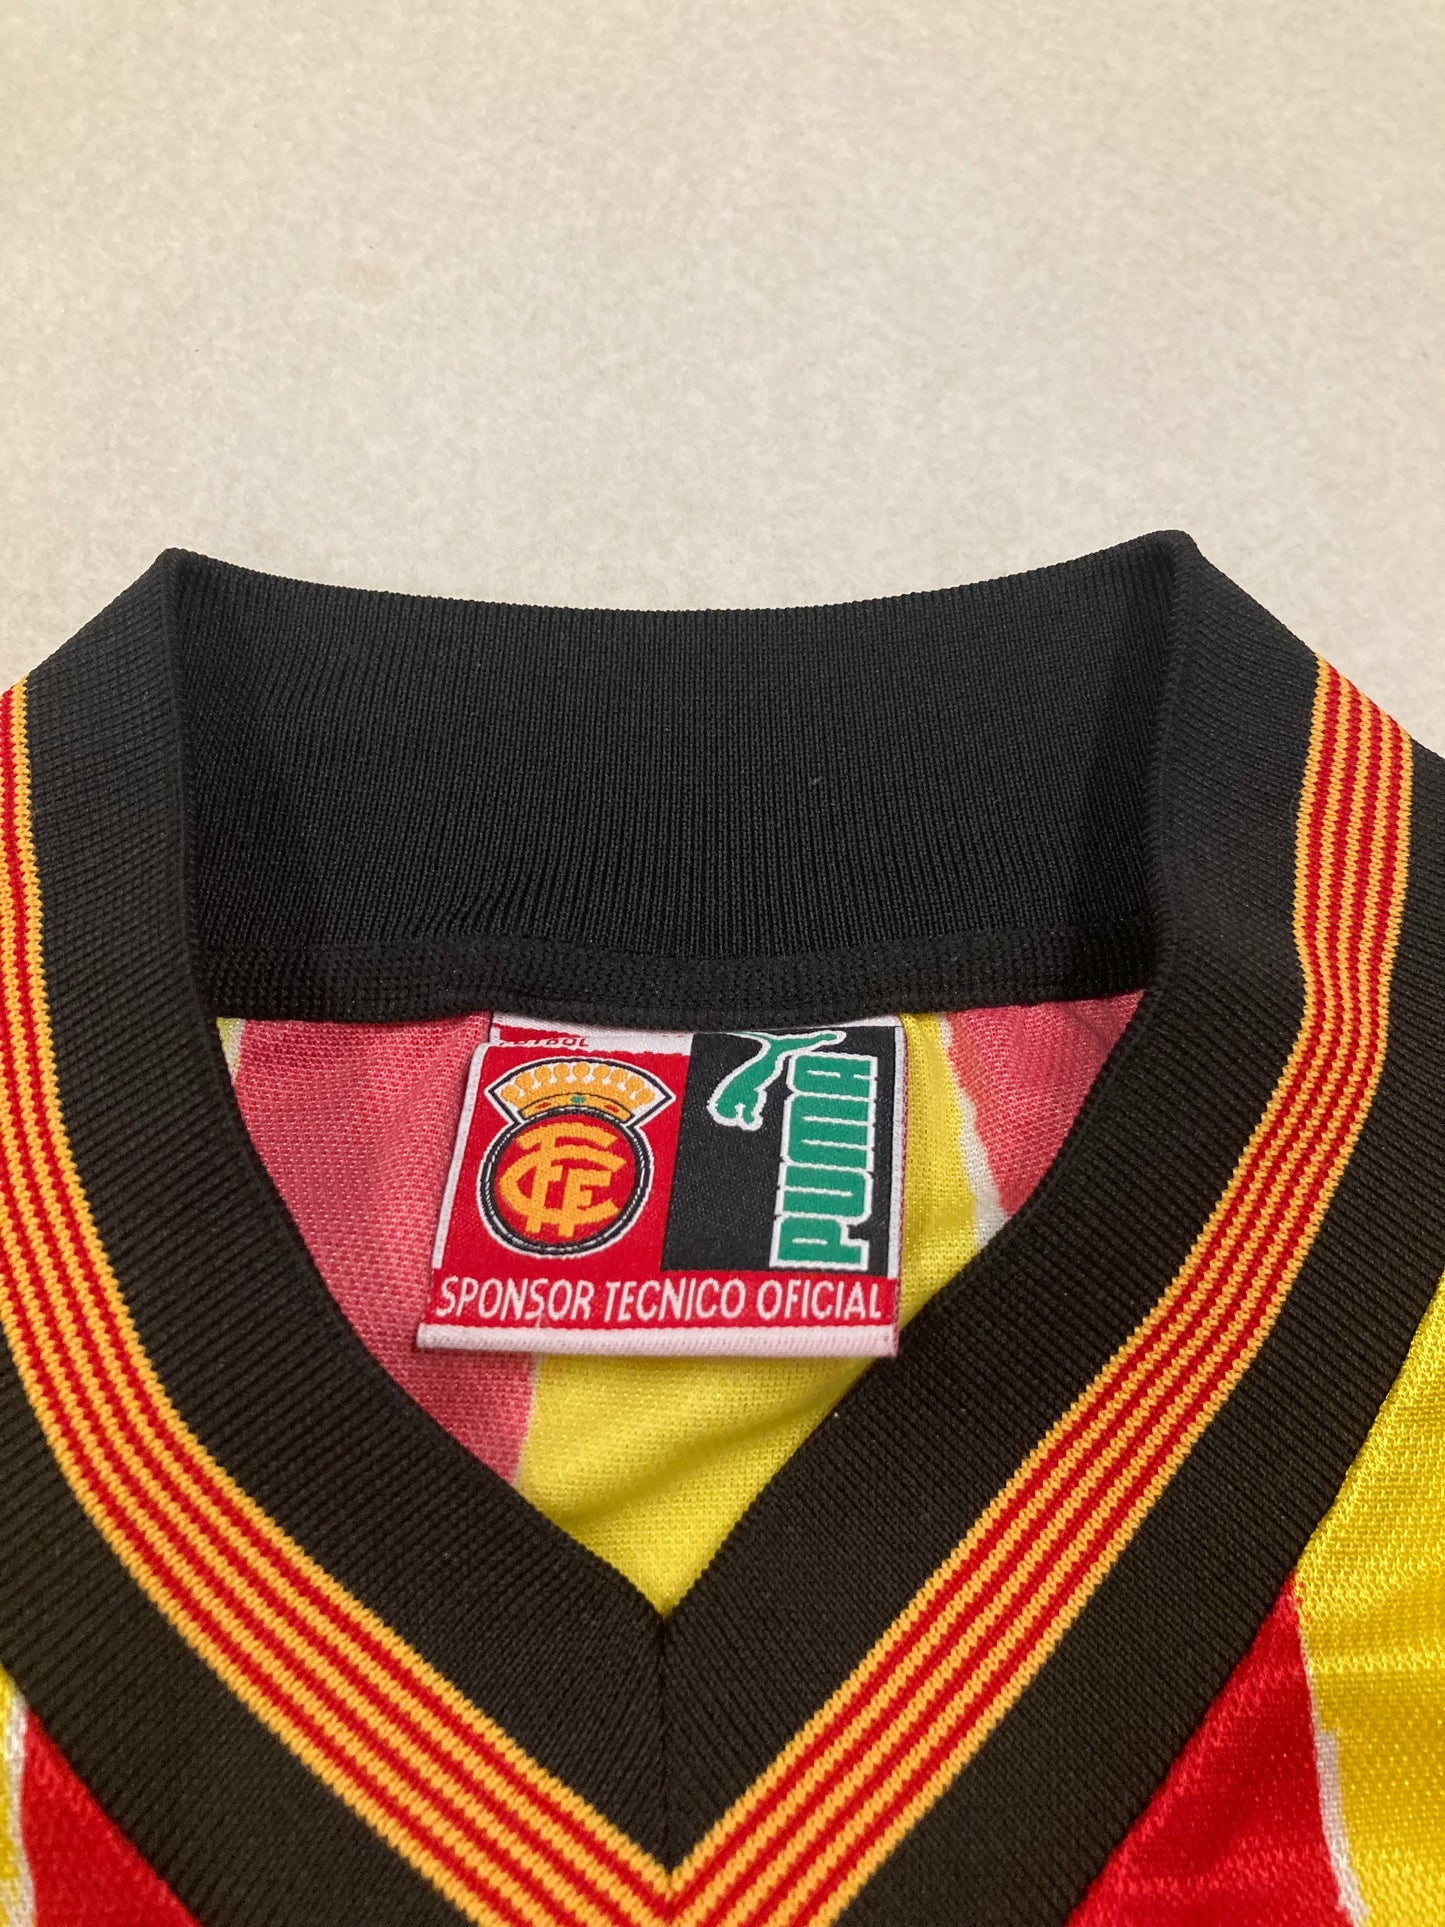 Camiseta Puma Selección Catalana 1998 ‘First Kit seleccion catalana Ever’ Vintage - M